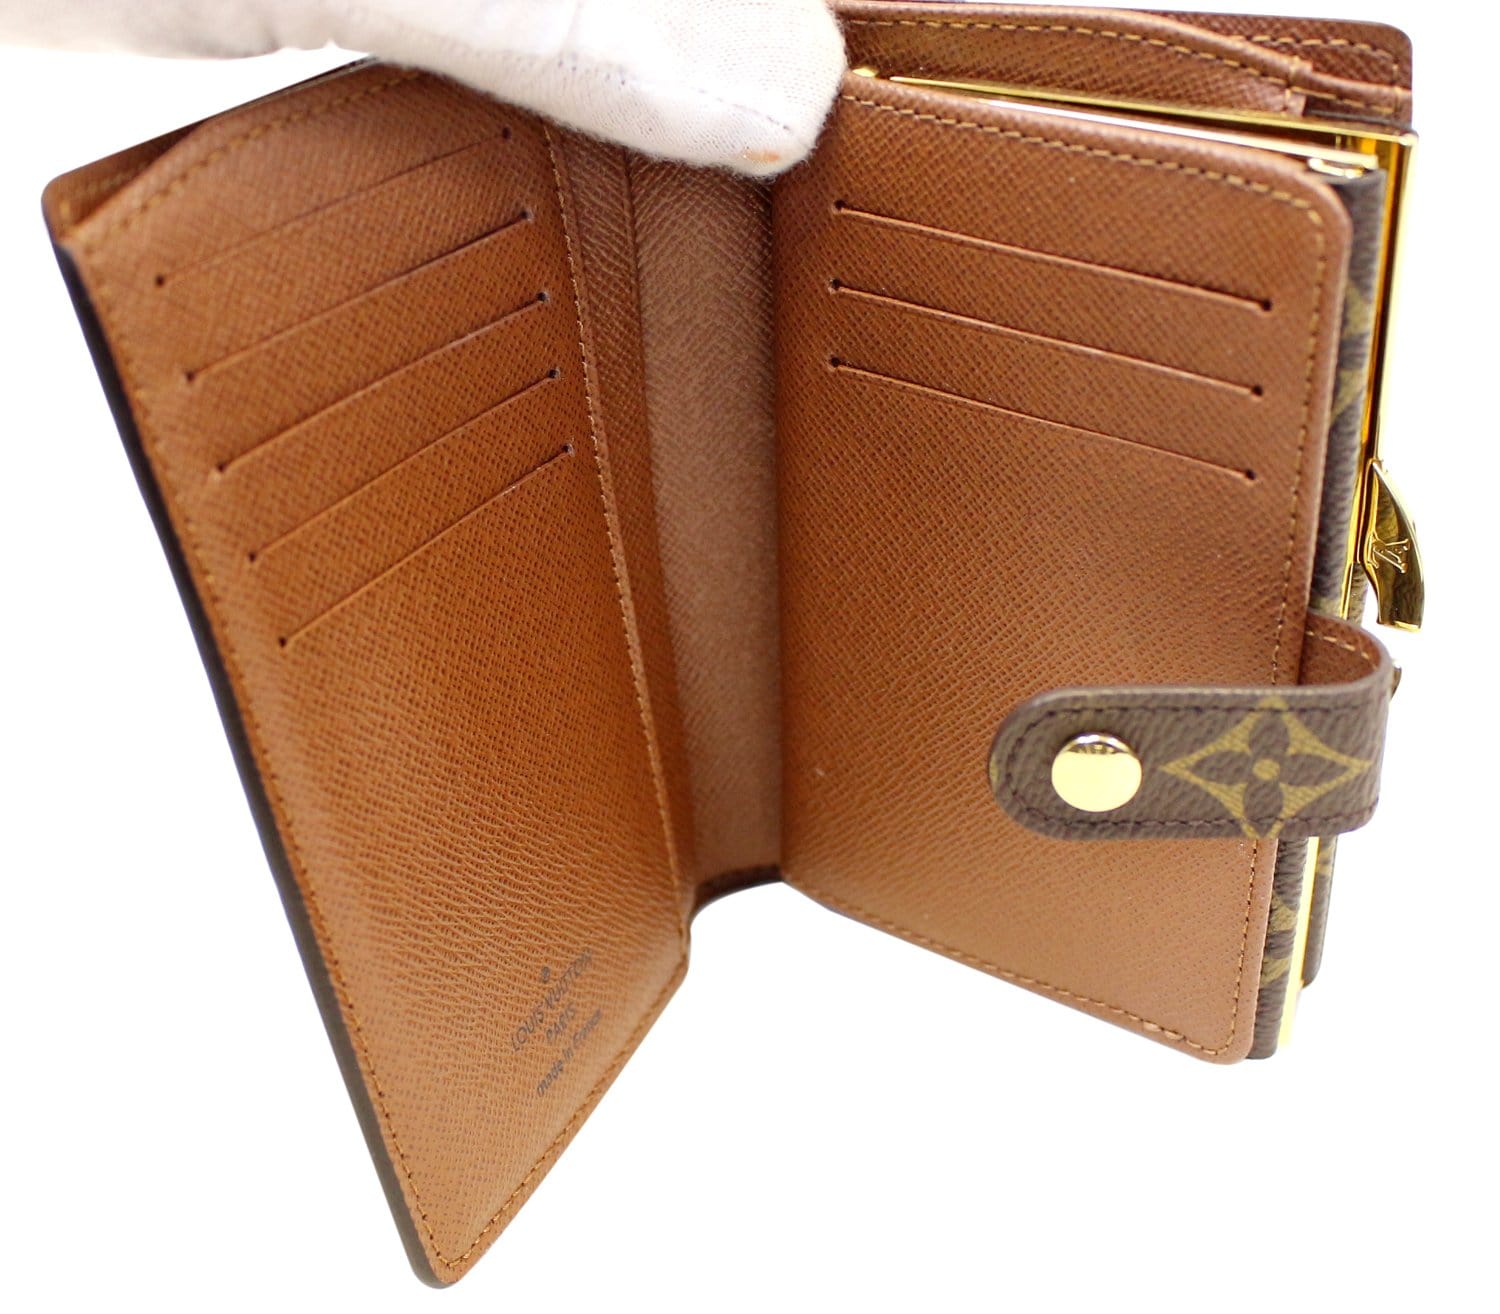 lv wallet purse